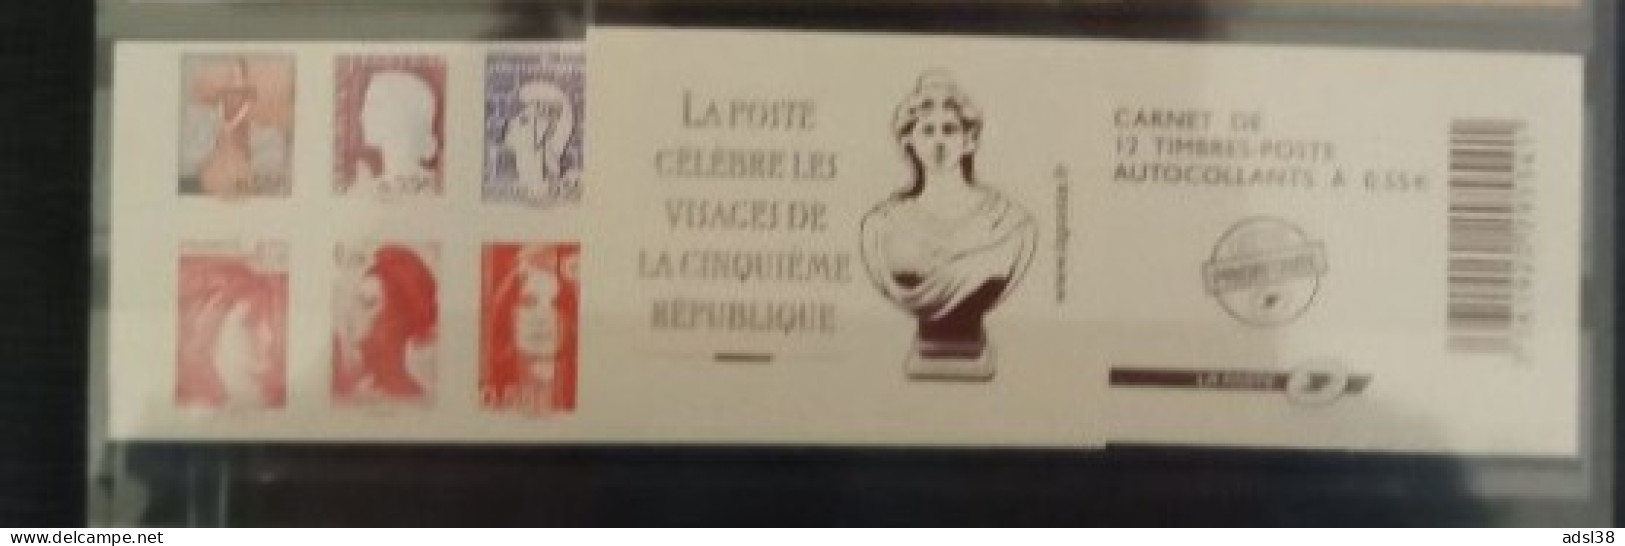 France - Carnet Visages Vème République - 1518 - Gedenkmarken